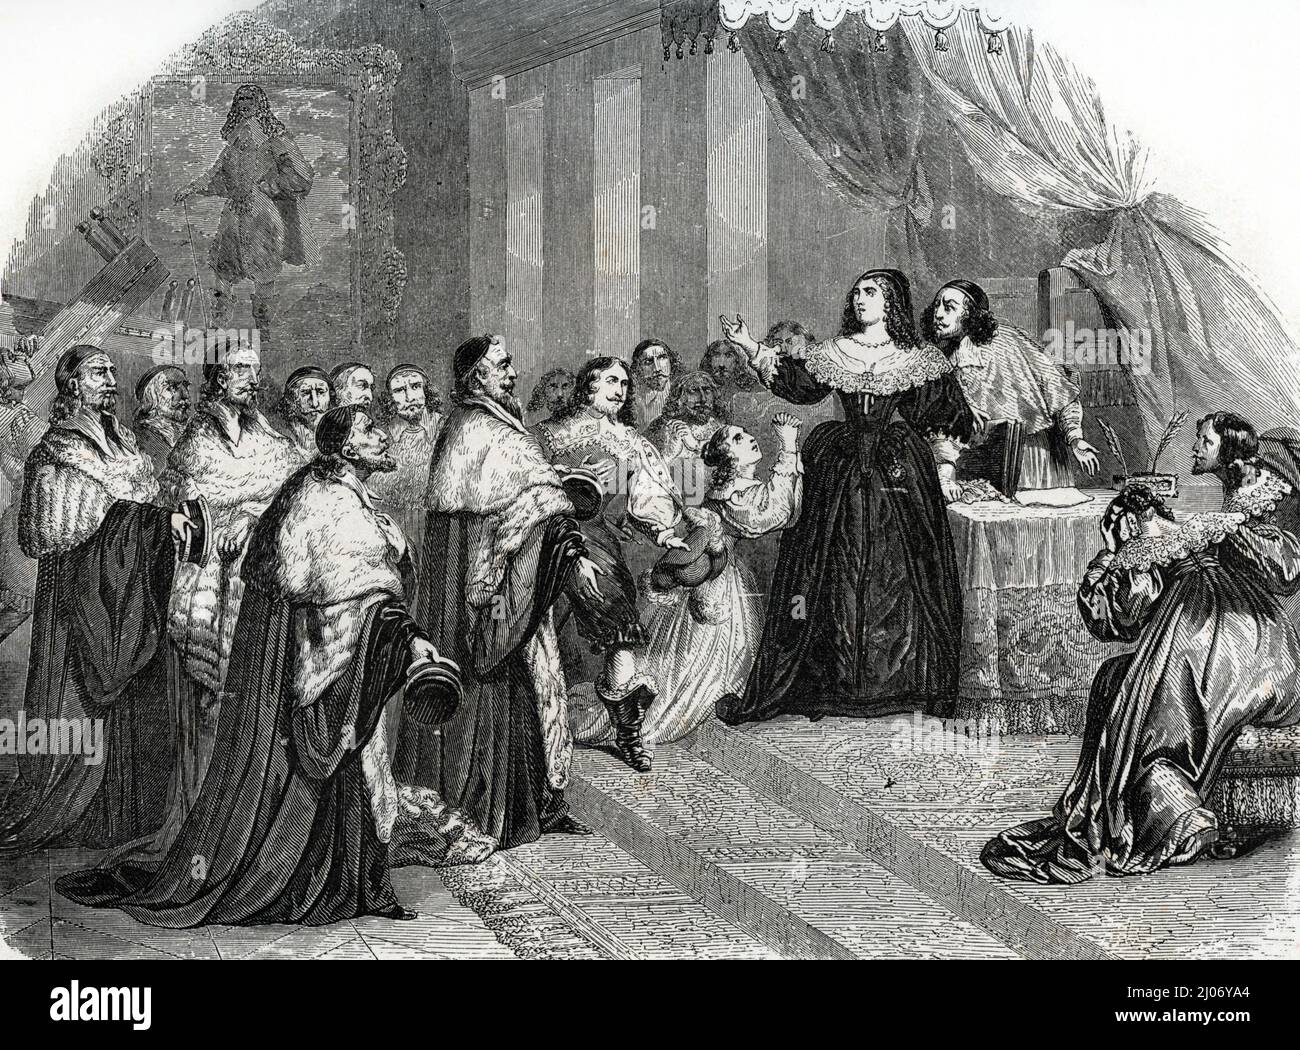 Fronde (1648-1653) : 'Le parlement de Paris se opone a la reine Anne d'Autriche (1601-1666) demande la liberation de Pierre Broussel (1575-1654) qu'elle et le cardinal Mazarin ont fait arreter le 26 aout 1648' (Fronde (1648-1653): 'El parlamento de París pide a la Reina Ana de Austria (1601-1666) que libere a Pierre Broussel (1575-1654) a quien ella y el Cardenal Mazarin habían arrestado el 26 de agosto de 1648 ' Gravure tiree de 'Louis XIV et son siecle' d'Alexandre Dumas 1851 Collection privee Foto de stock